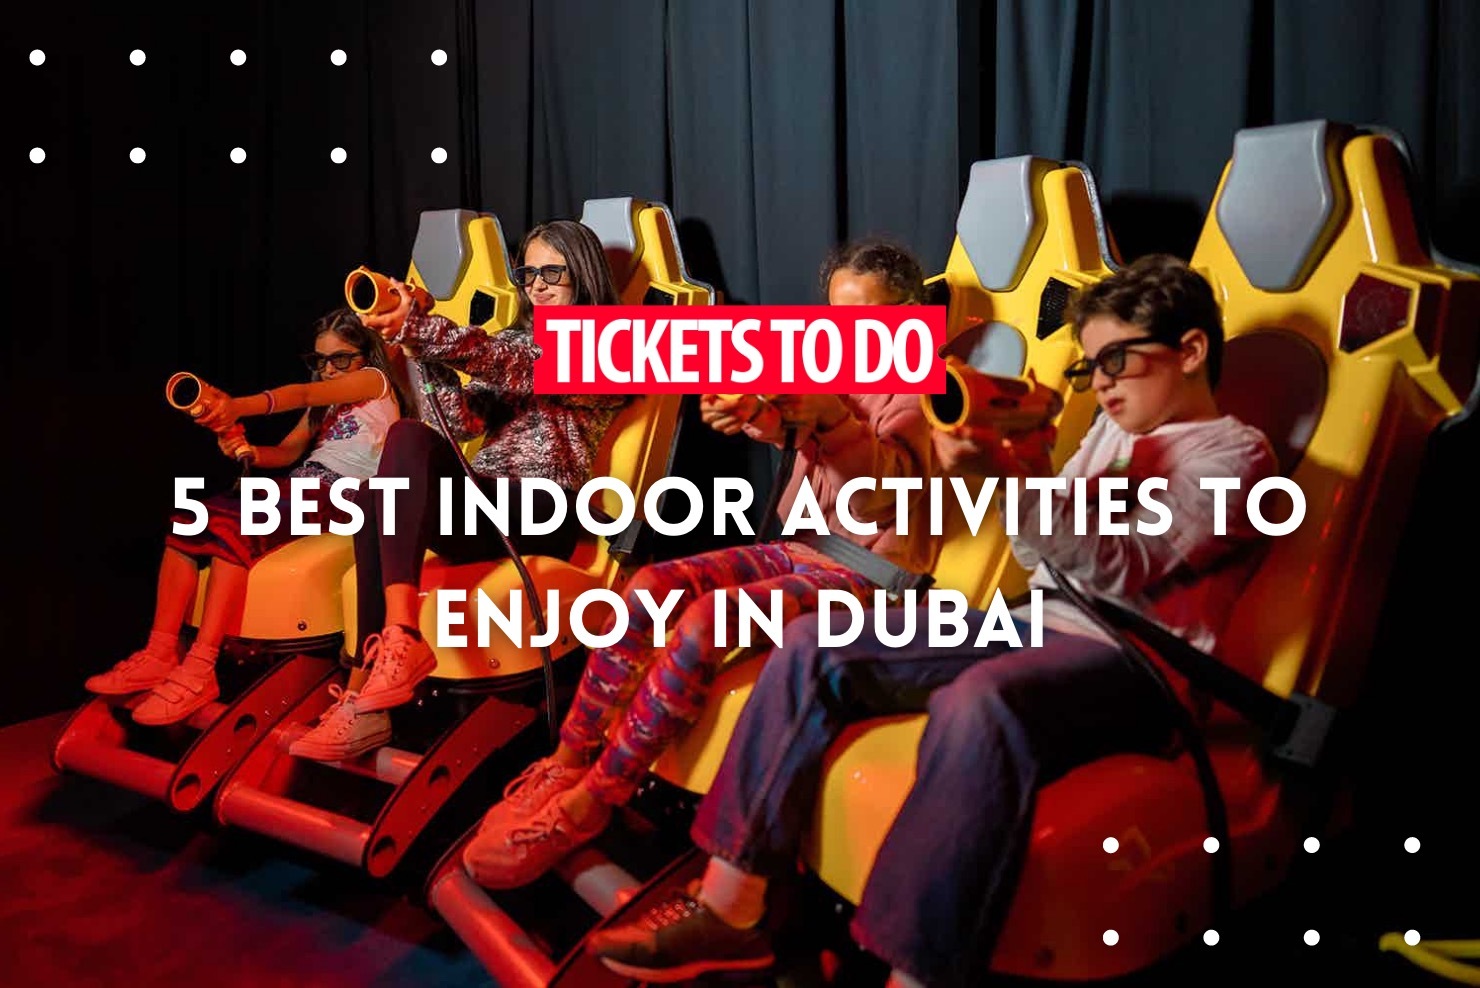 5 best indoor activities to enjoy in Dubai